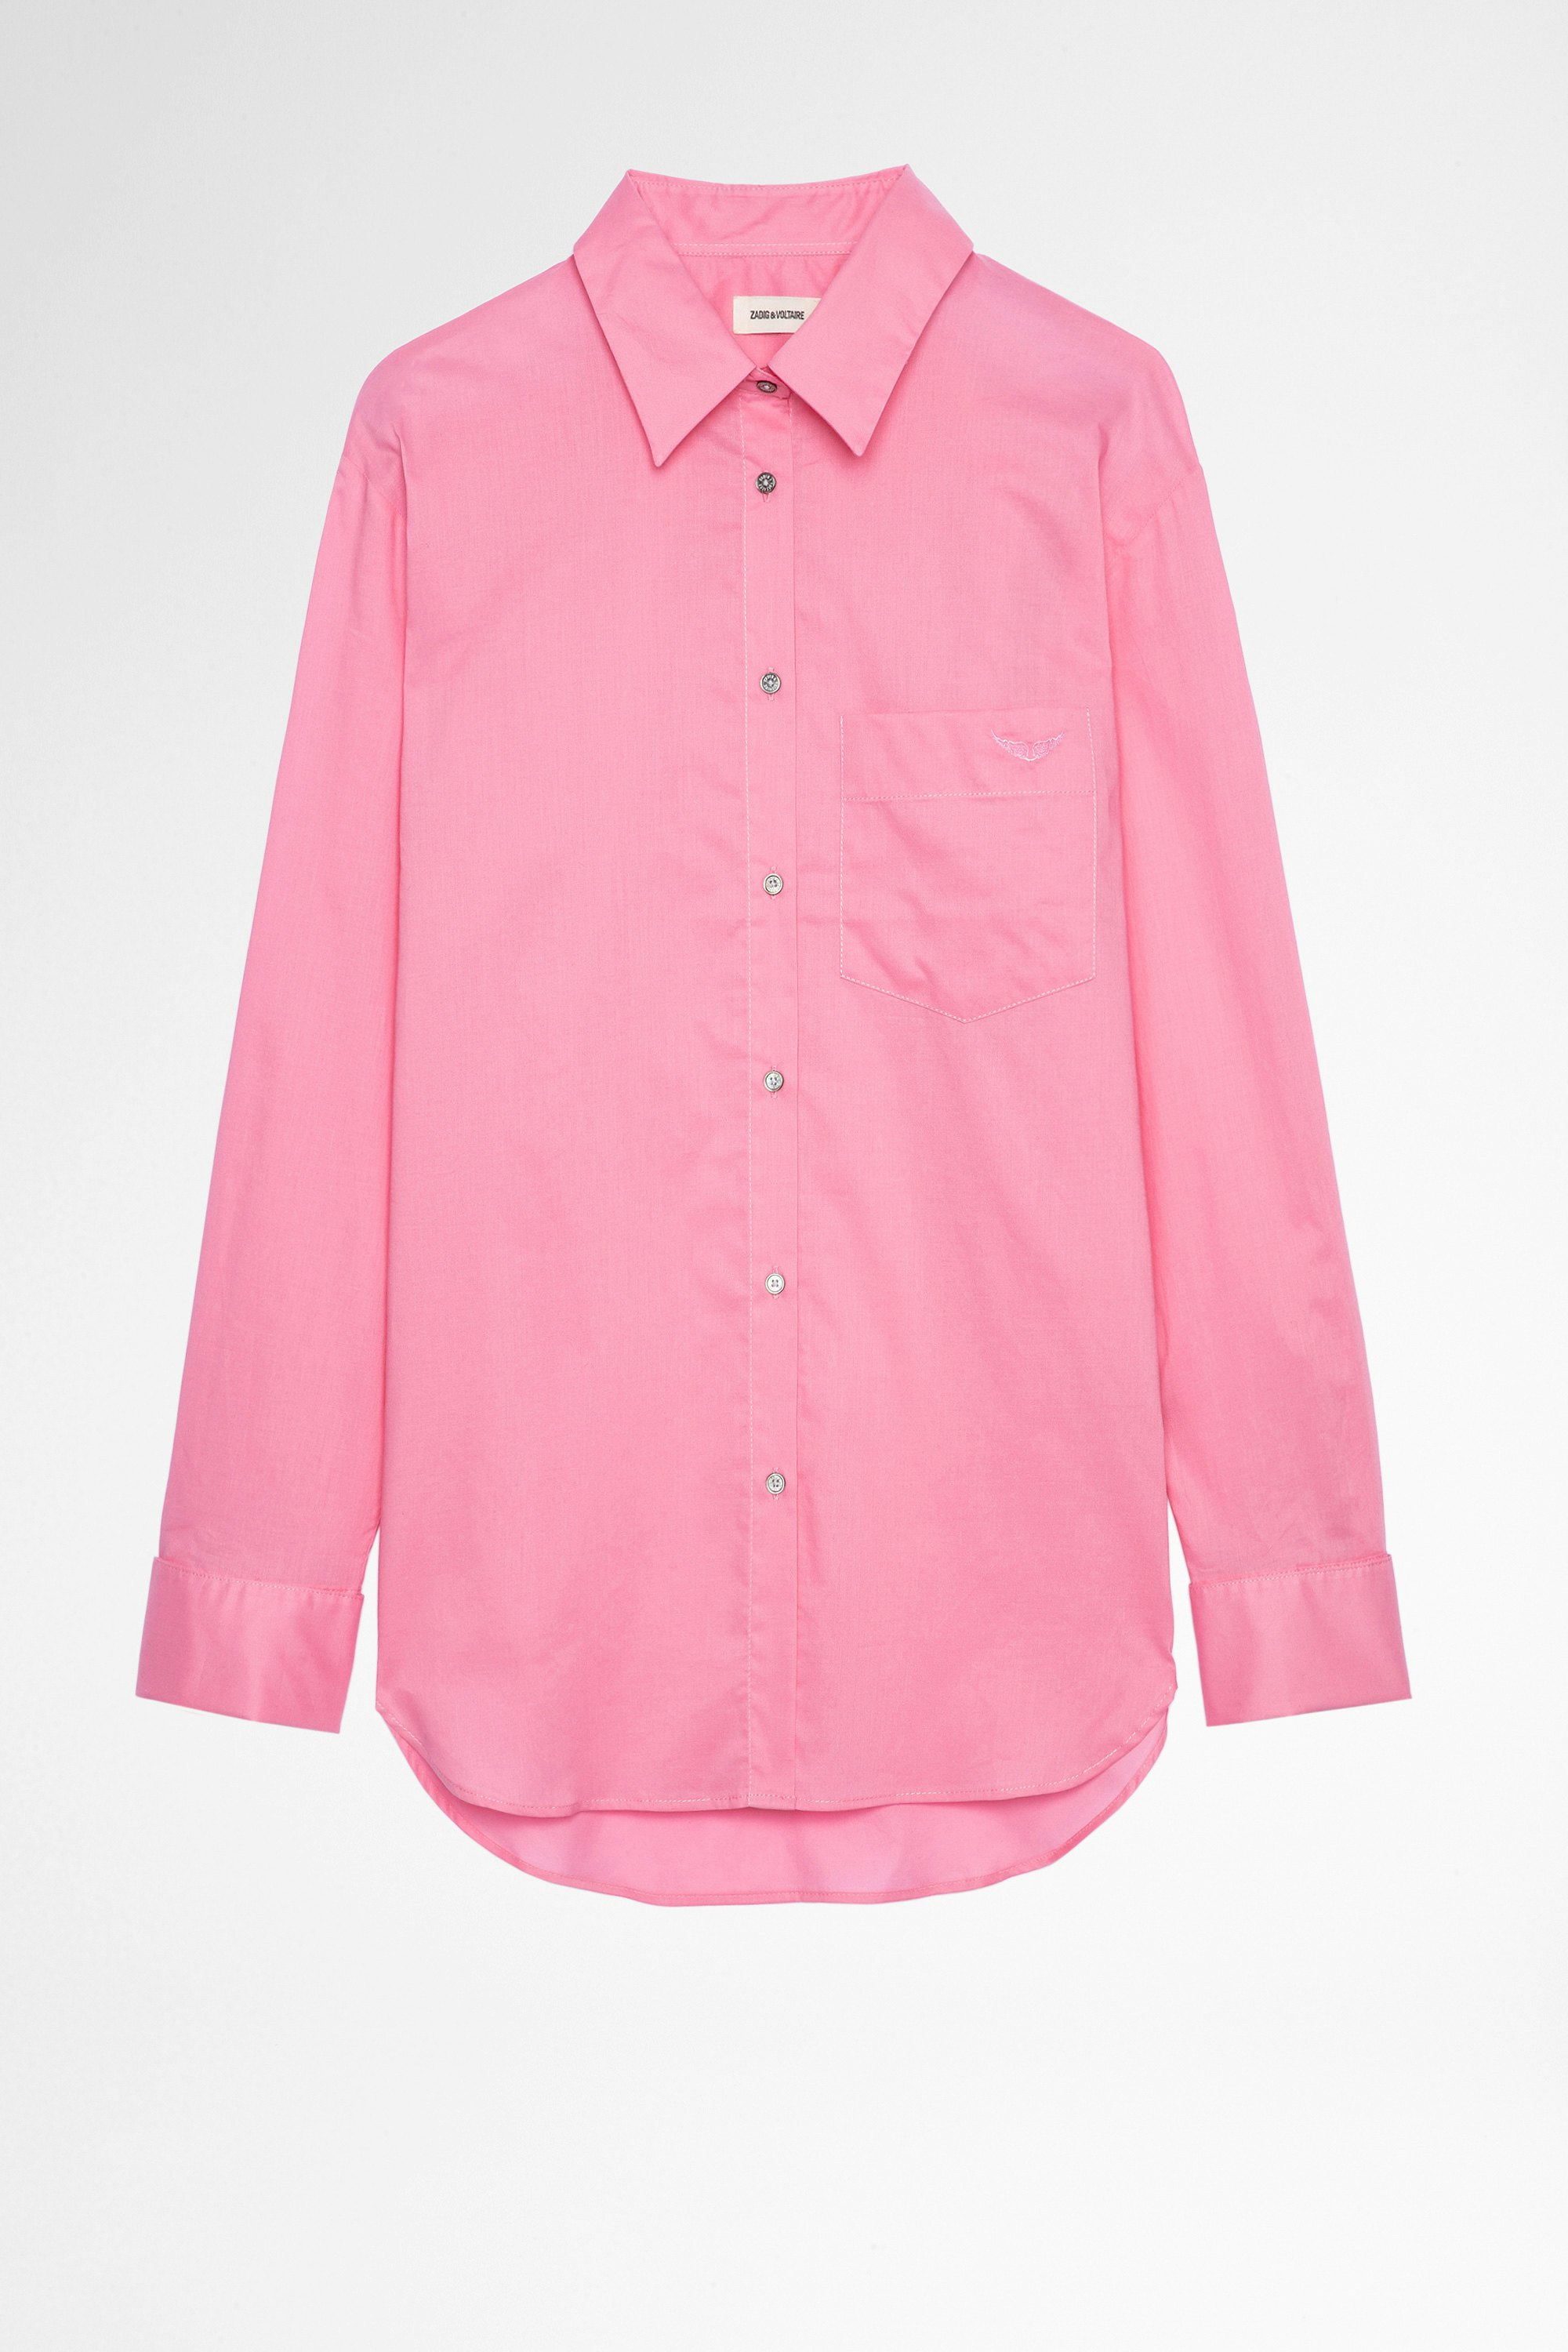 Camicia Morning Camicia in cotone rosa, donna. Reallizzato con fibre da agricoltura biologica